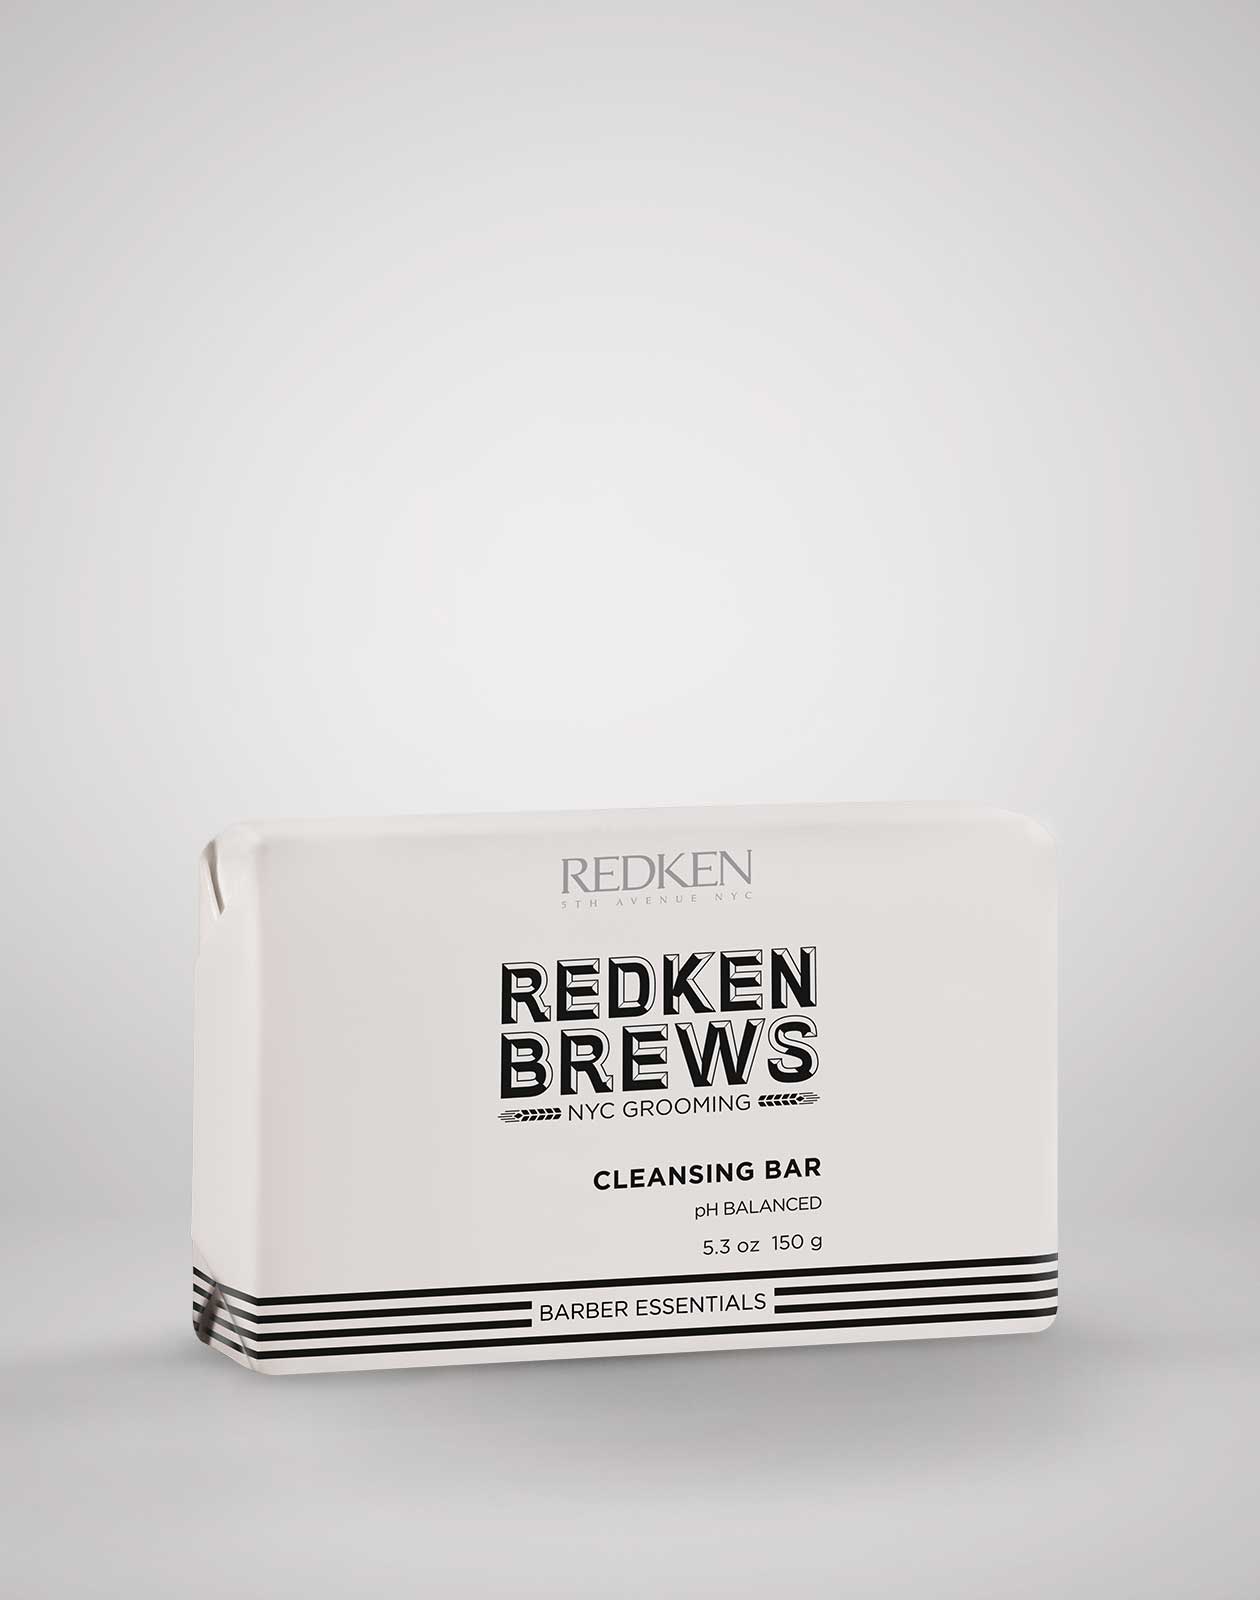 Redken Brews Cleanse Bar ShopMBSalon.com